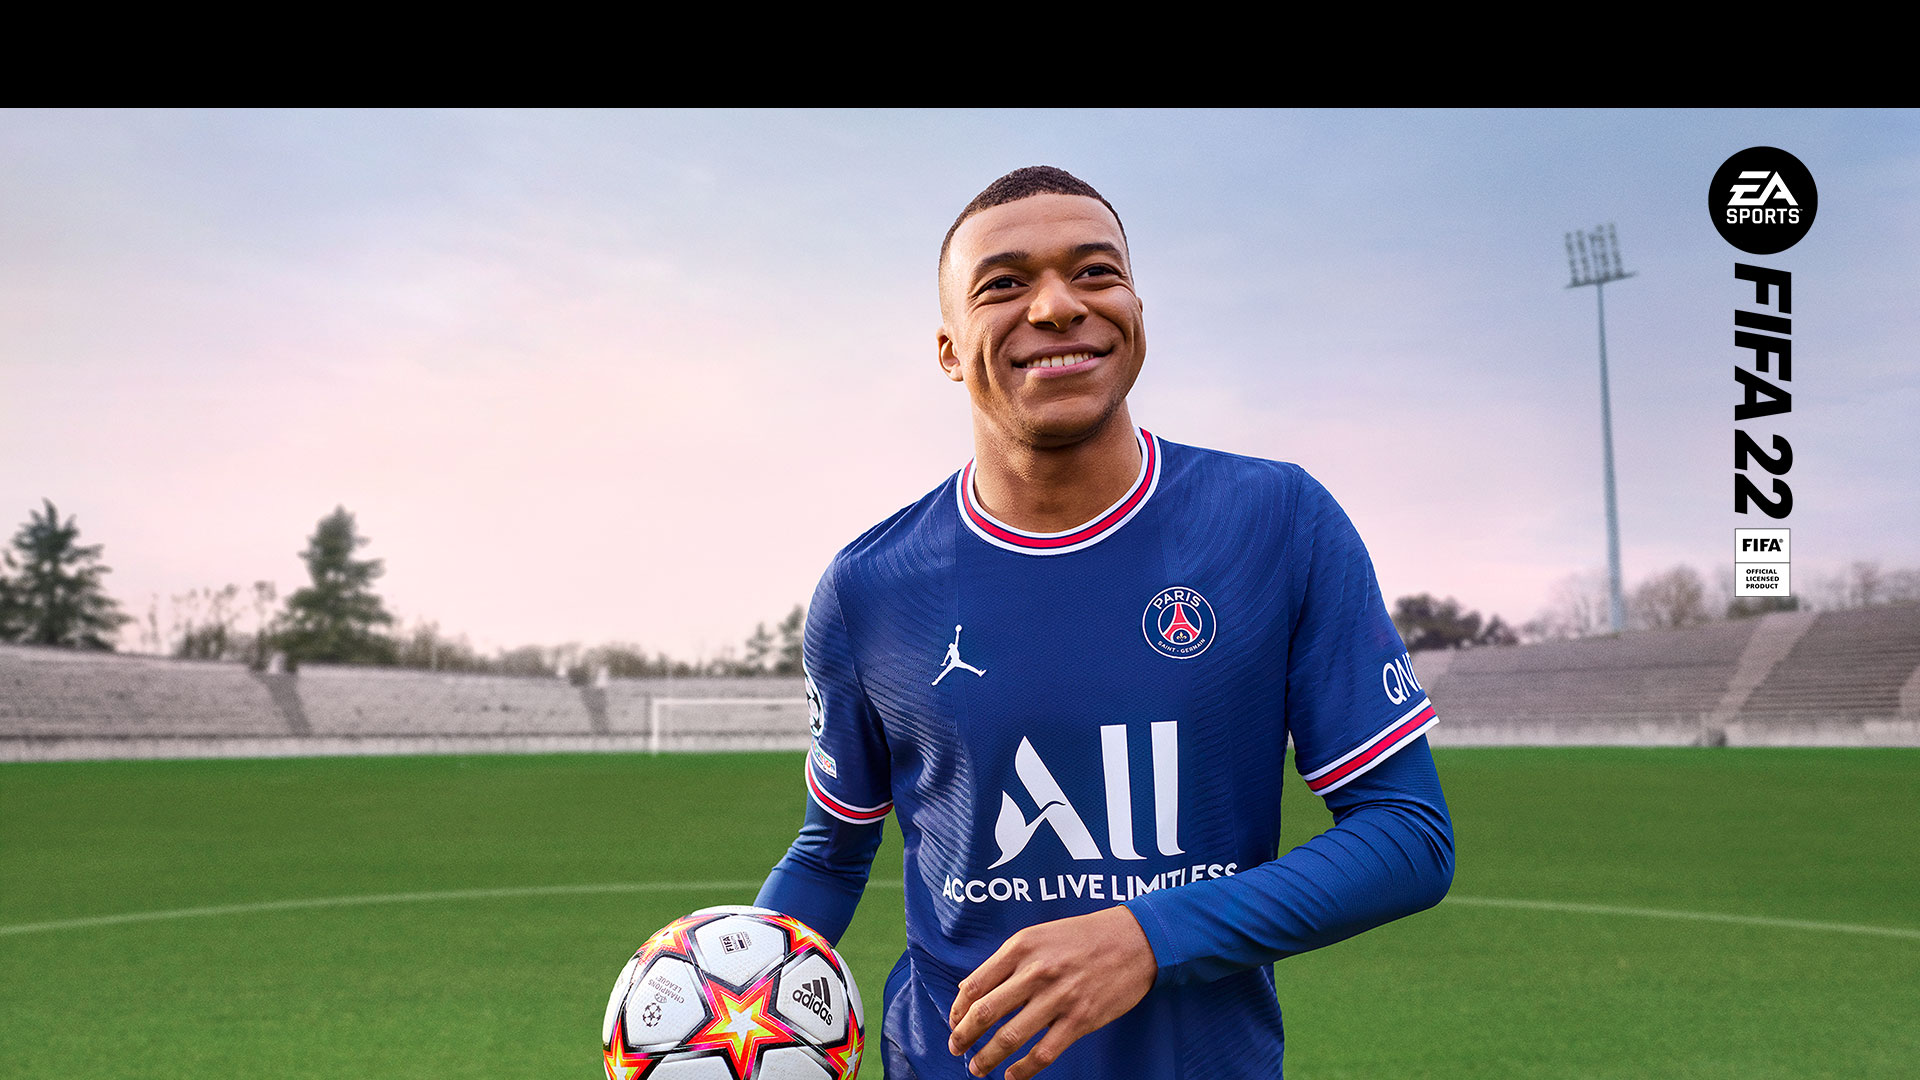 EA Sports、FIFA 22 公式ライセンス製品、人影のないスタジアムで笑顔のプレイヤーがボールを持っている。